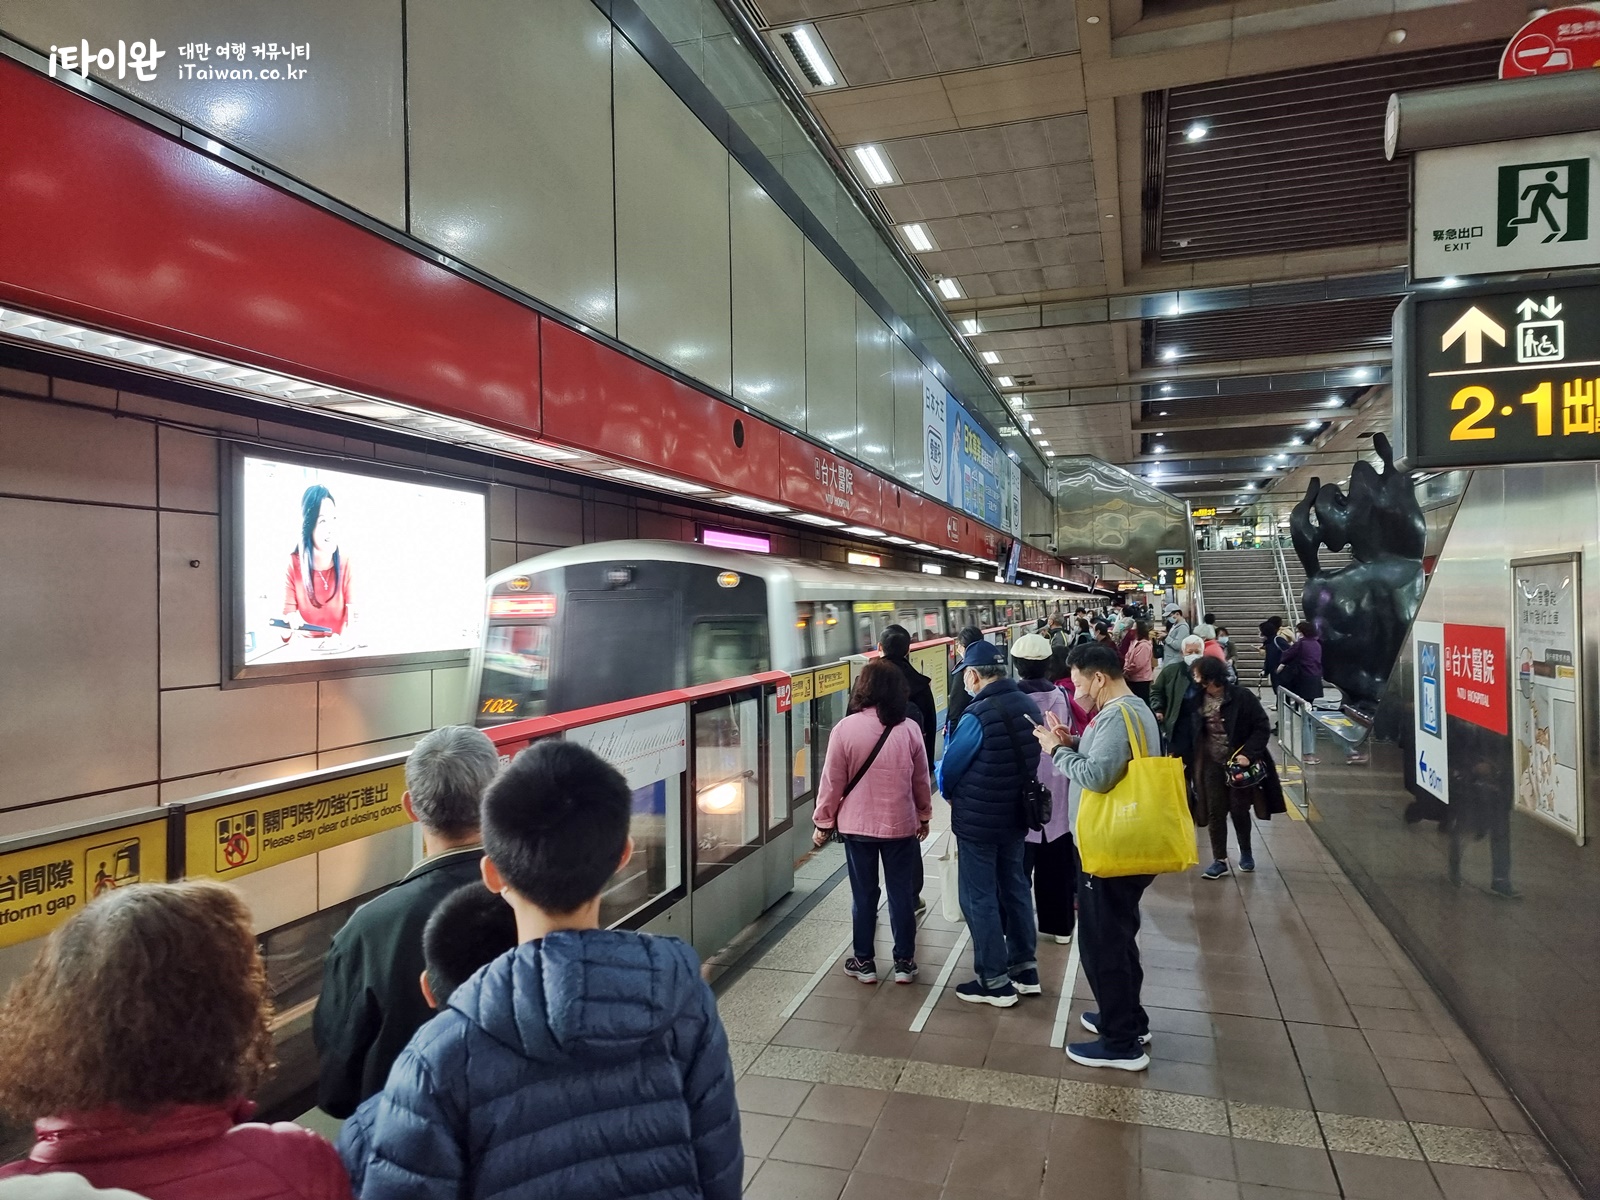 대만 일주 여행 2일차 타이베이-3 타이베이 지하철 플랫폼.jpg